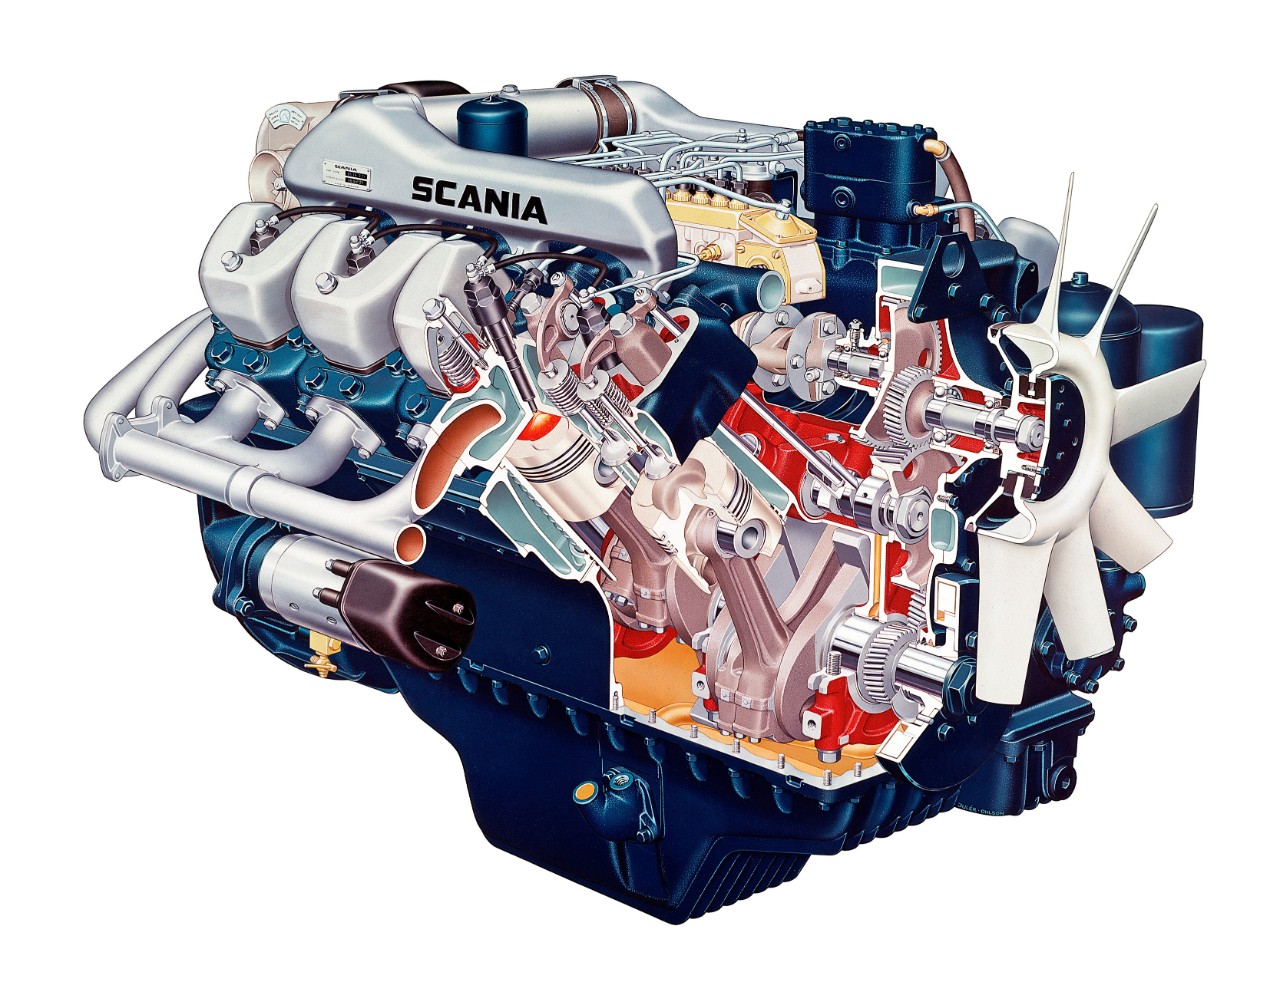 Scania 14-litre V8 engine V8 engine, 350 hp
Illustration: Hans Julér 1969

